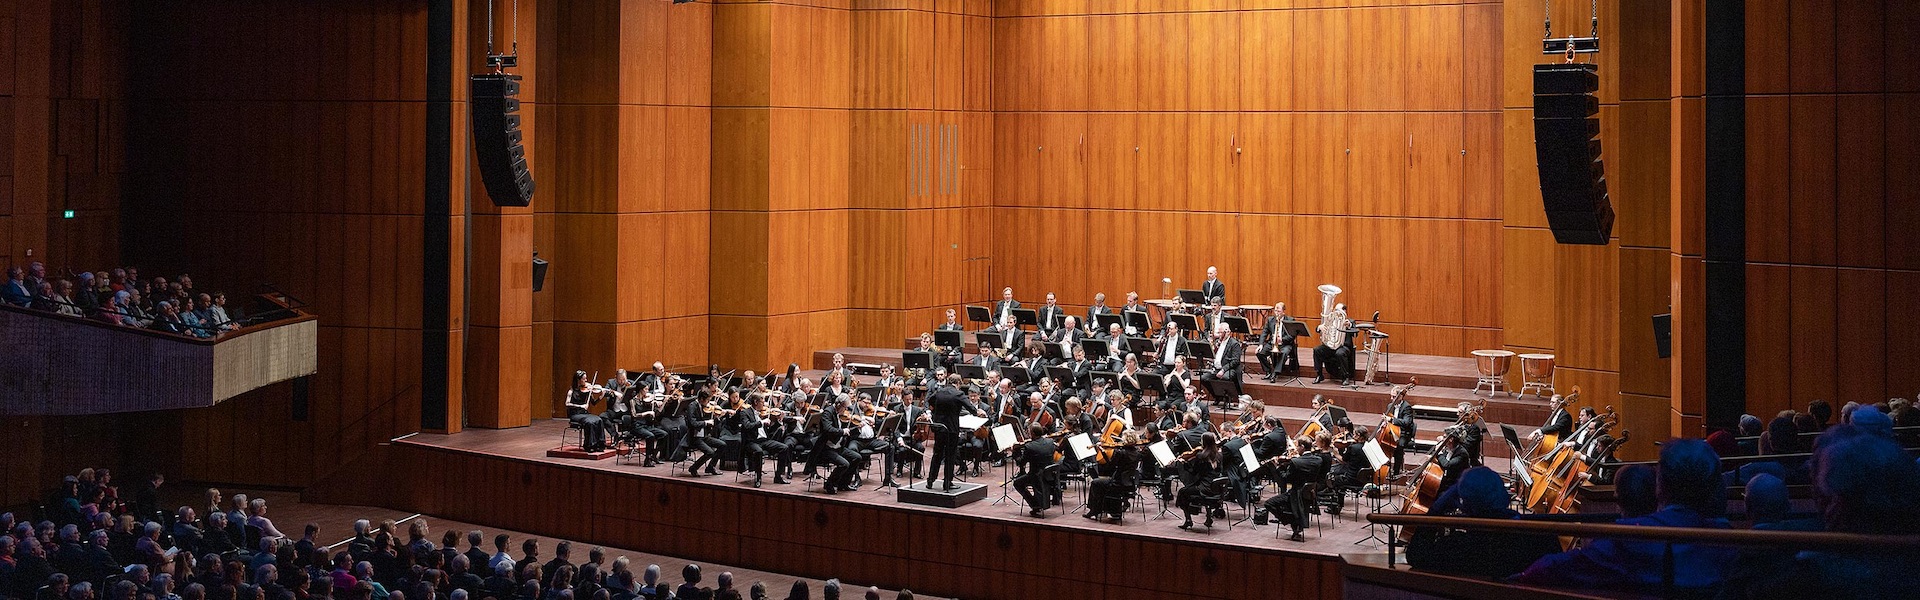 Orchester Musikalische Akademie Mannheim